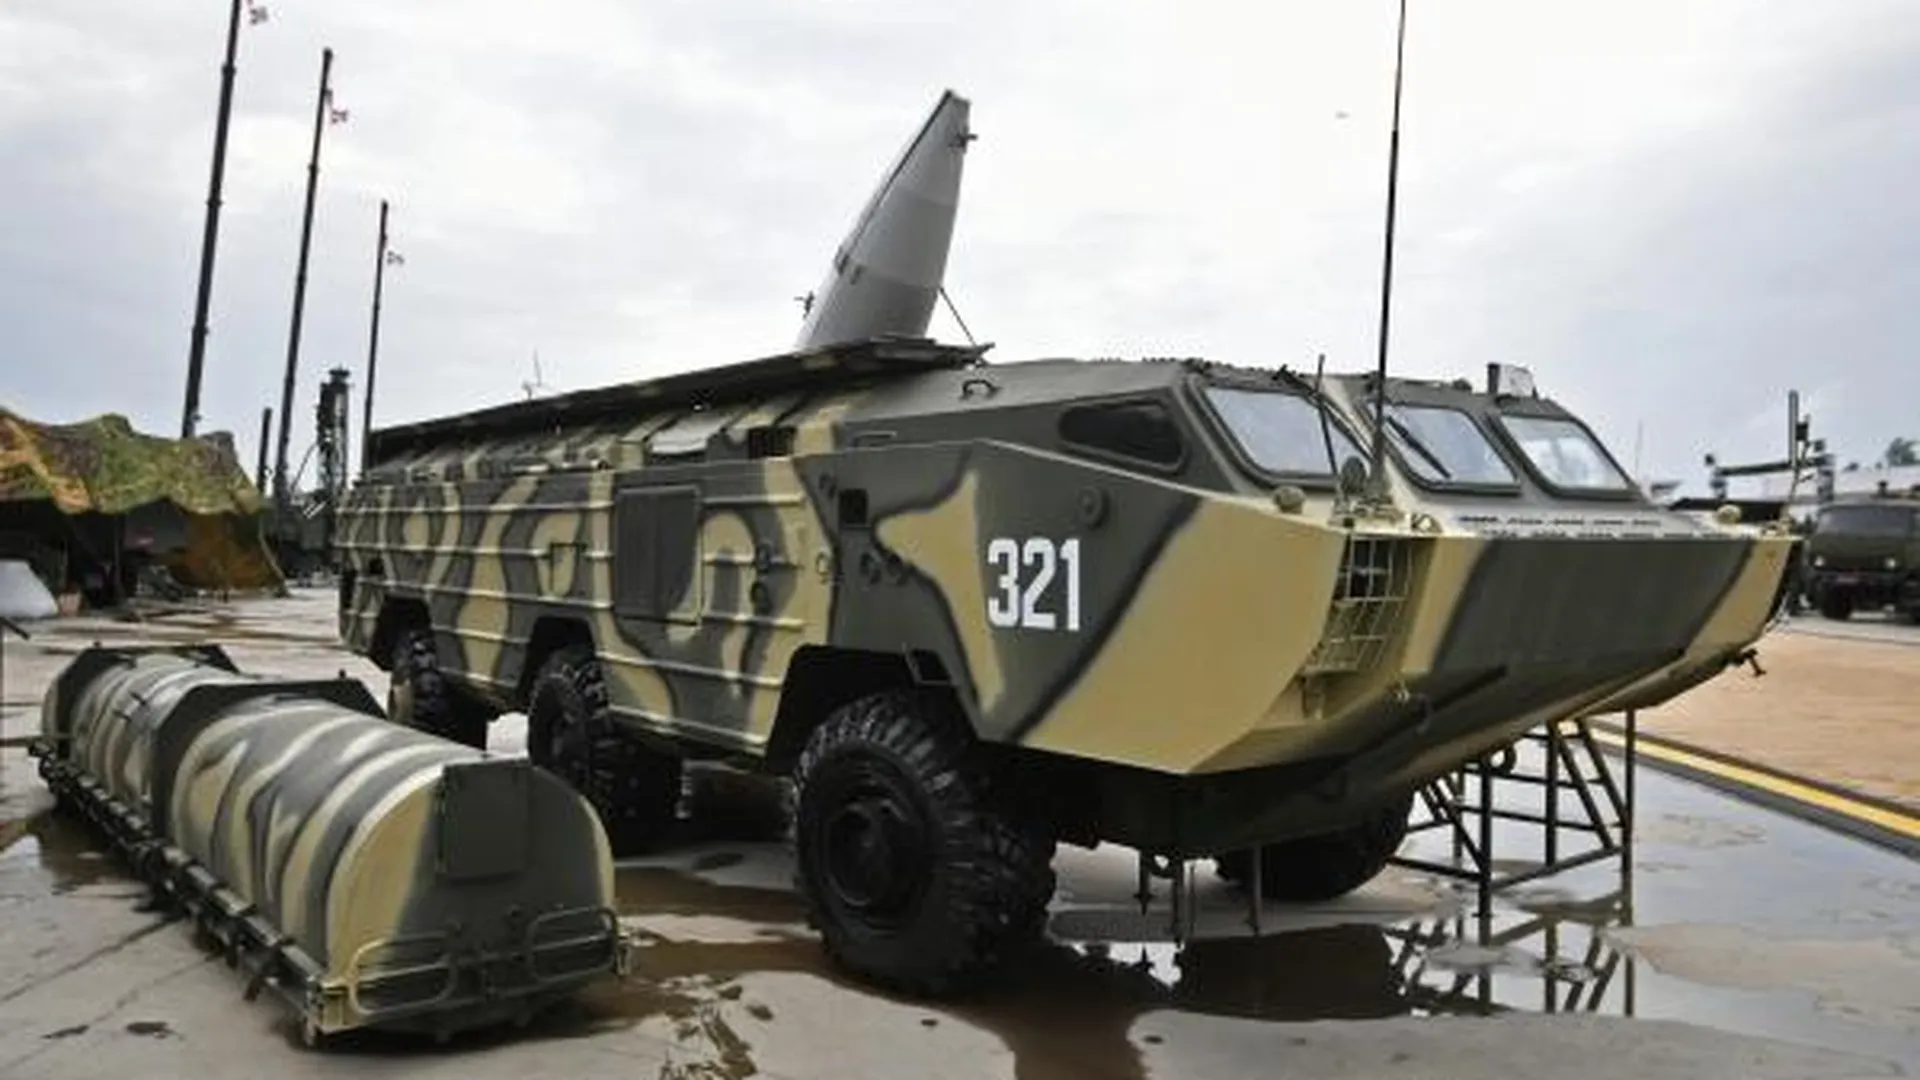 Постоянная экспозиция военной техники открылась в Щелкове